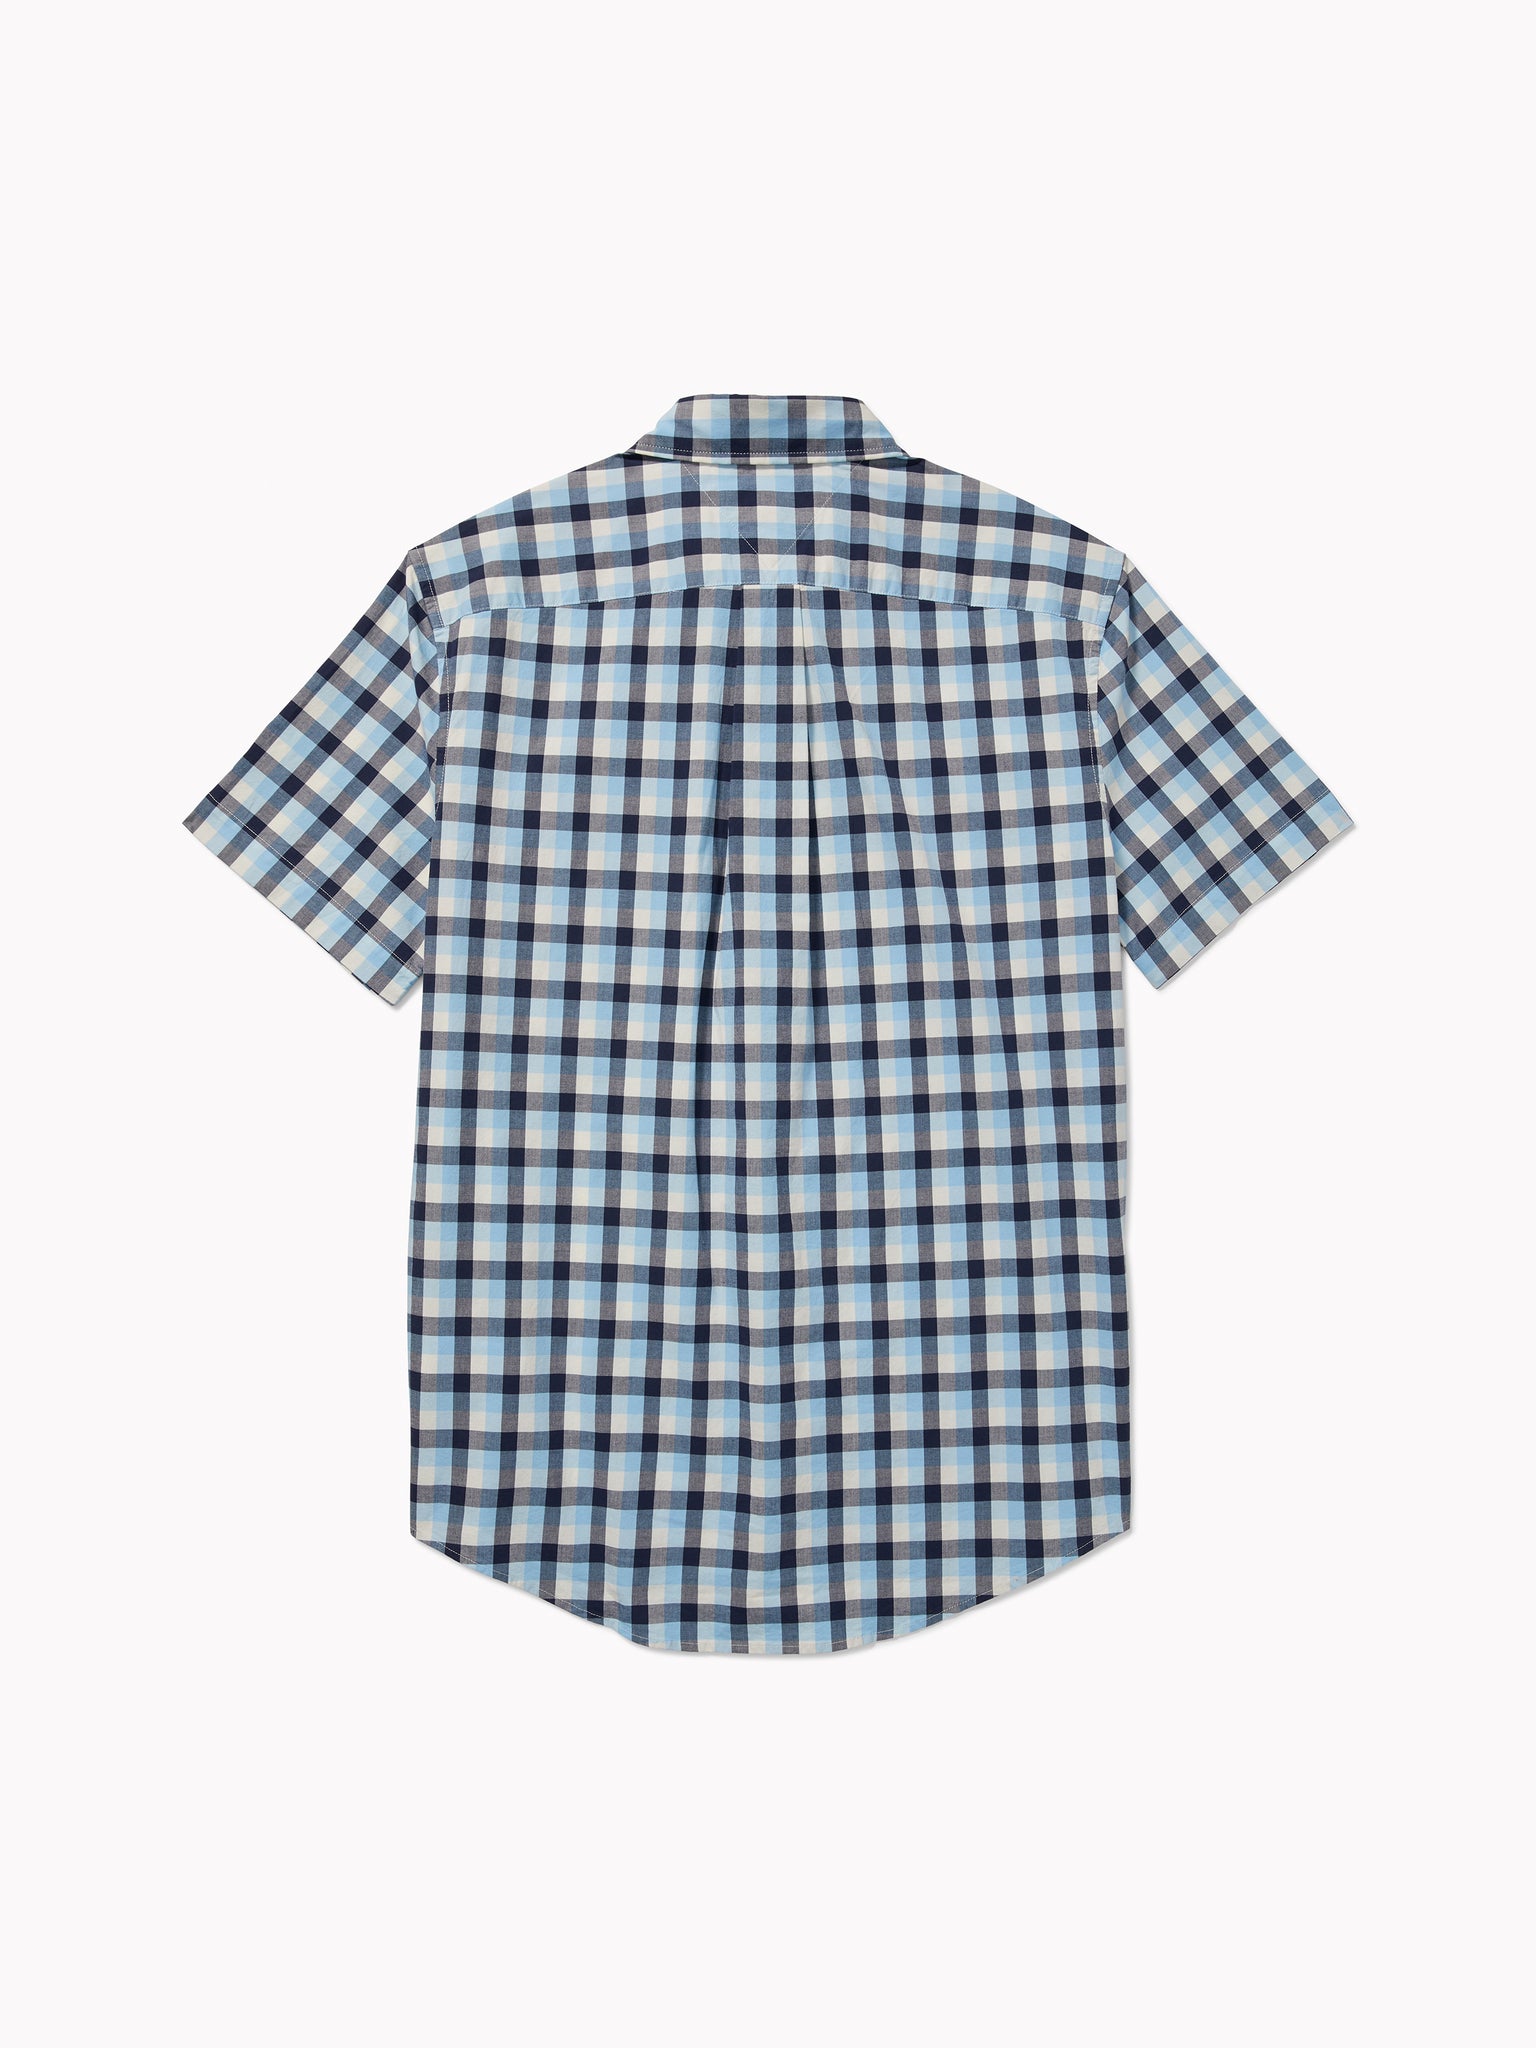 Check Shirt (Mens) - Hydrangea Blue